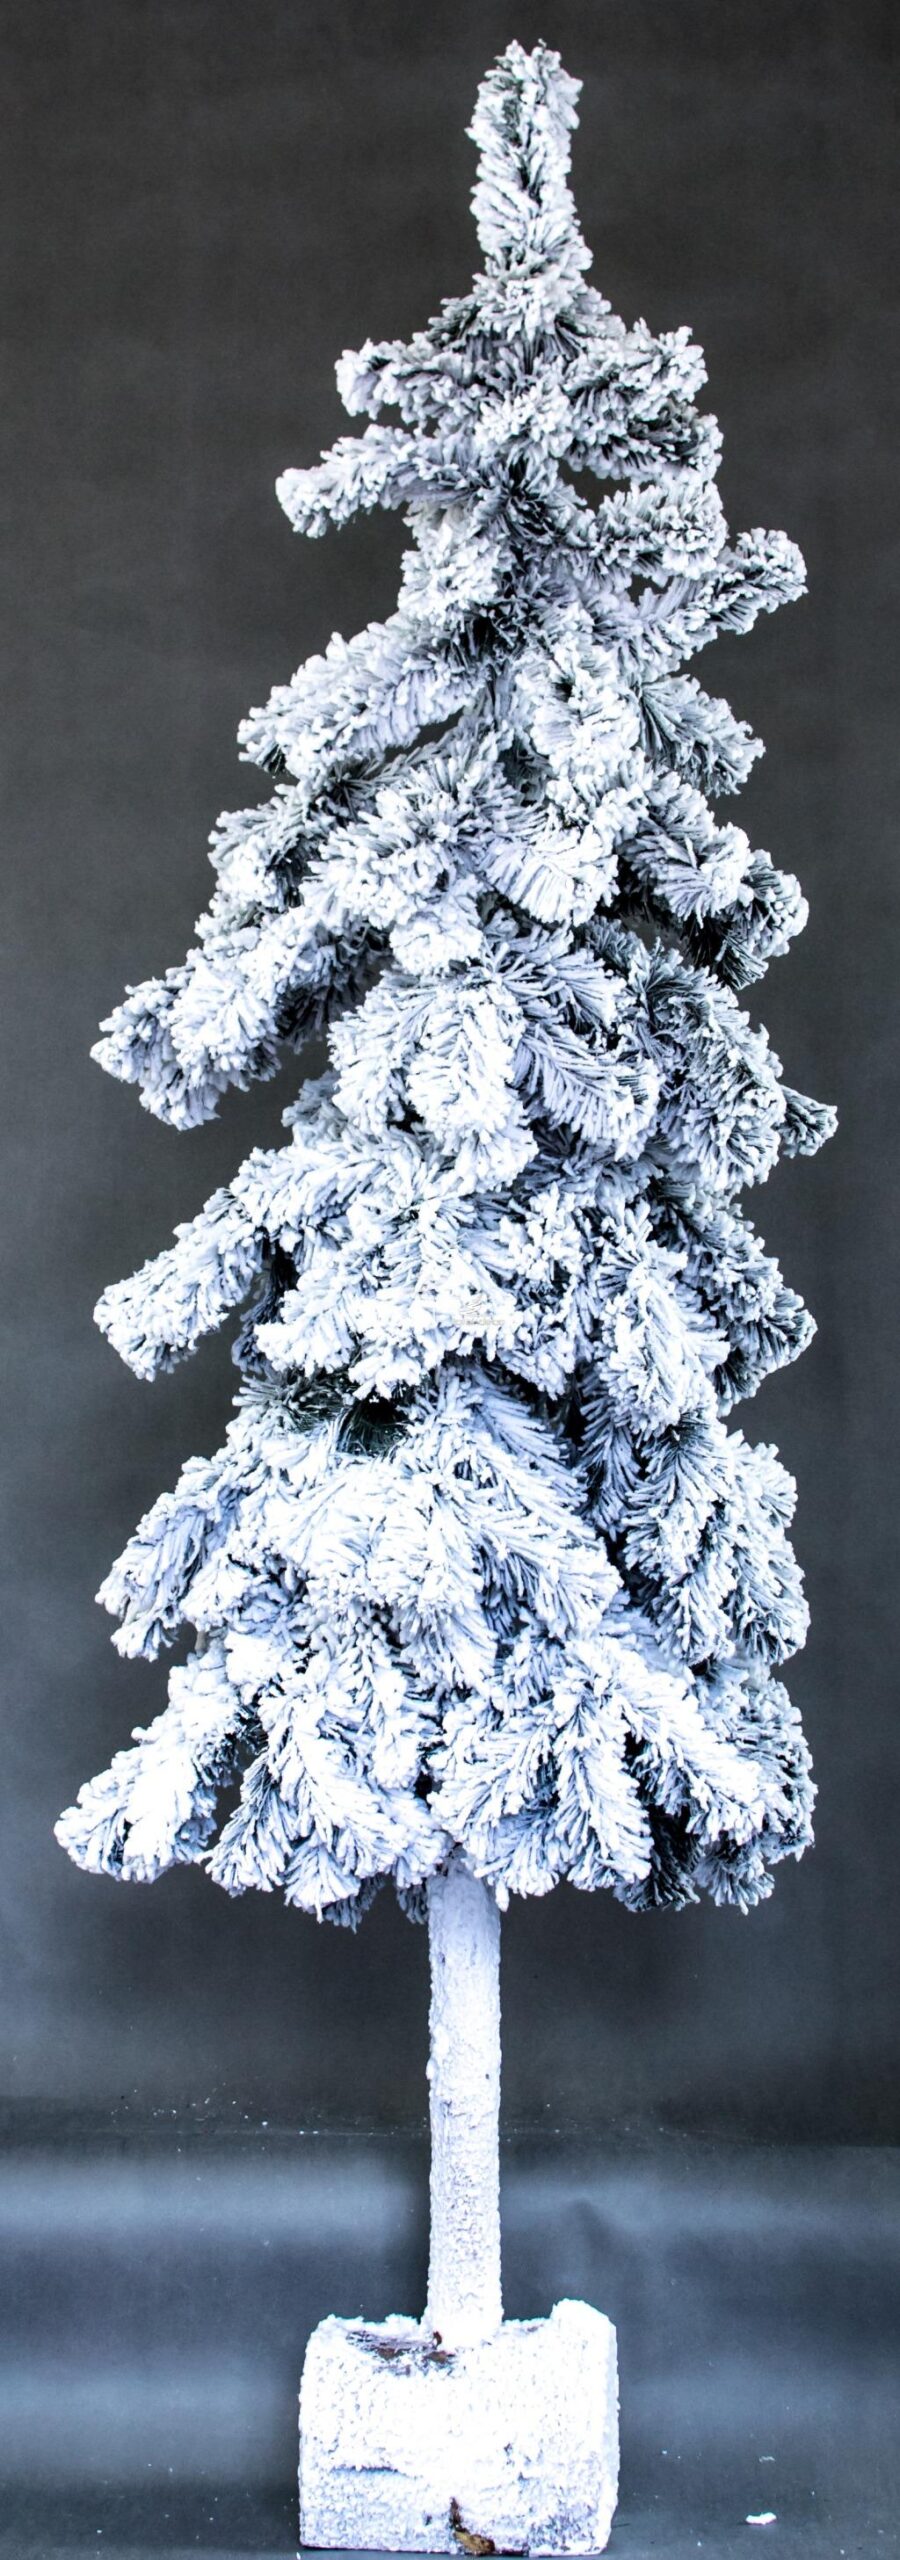 sztuczna żywa choinka na pniu nowoczesny wygląd oprószona śniegiem ośnieżona biała na nodze choinka nowoczesna dekoracja bożonarodzeniowa gałązki ze śniegiem